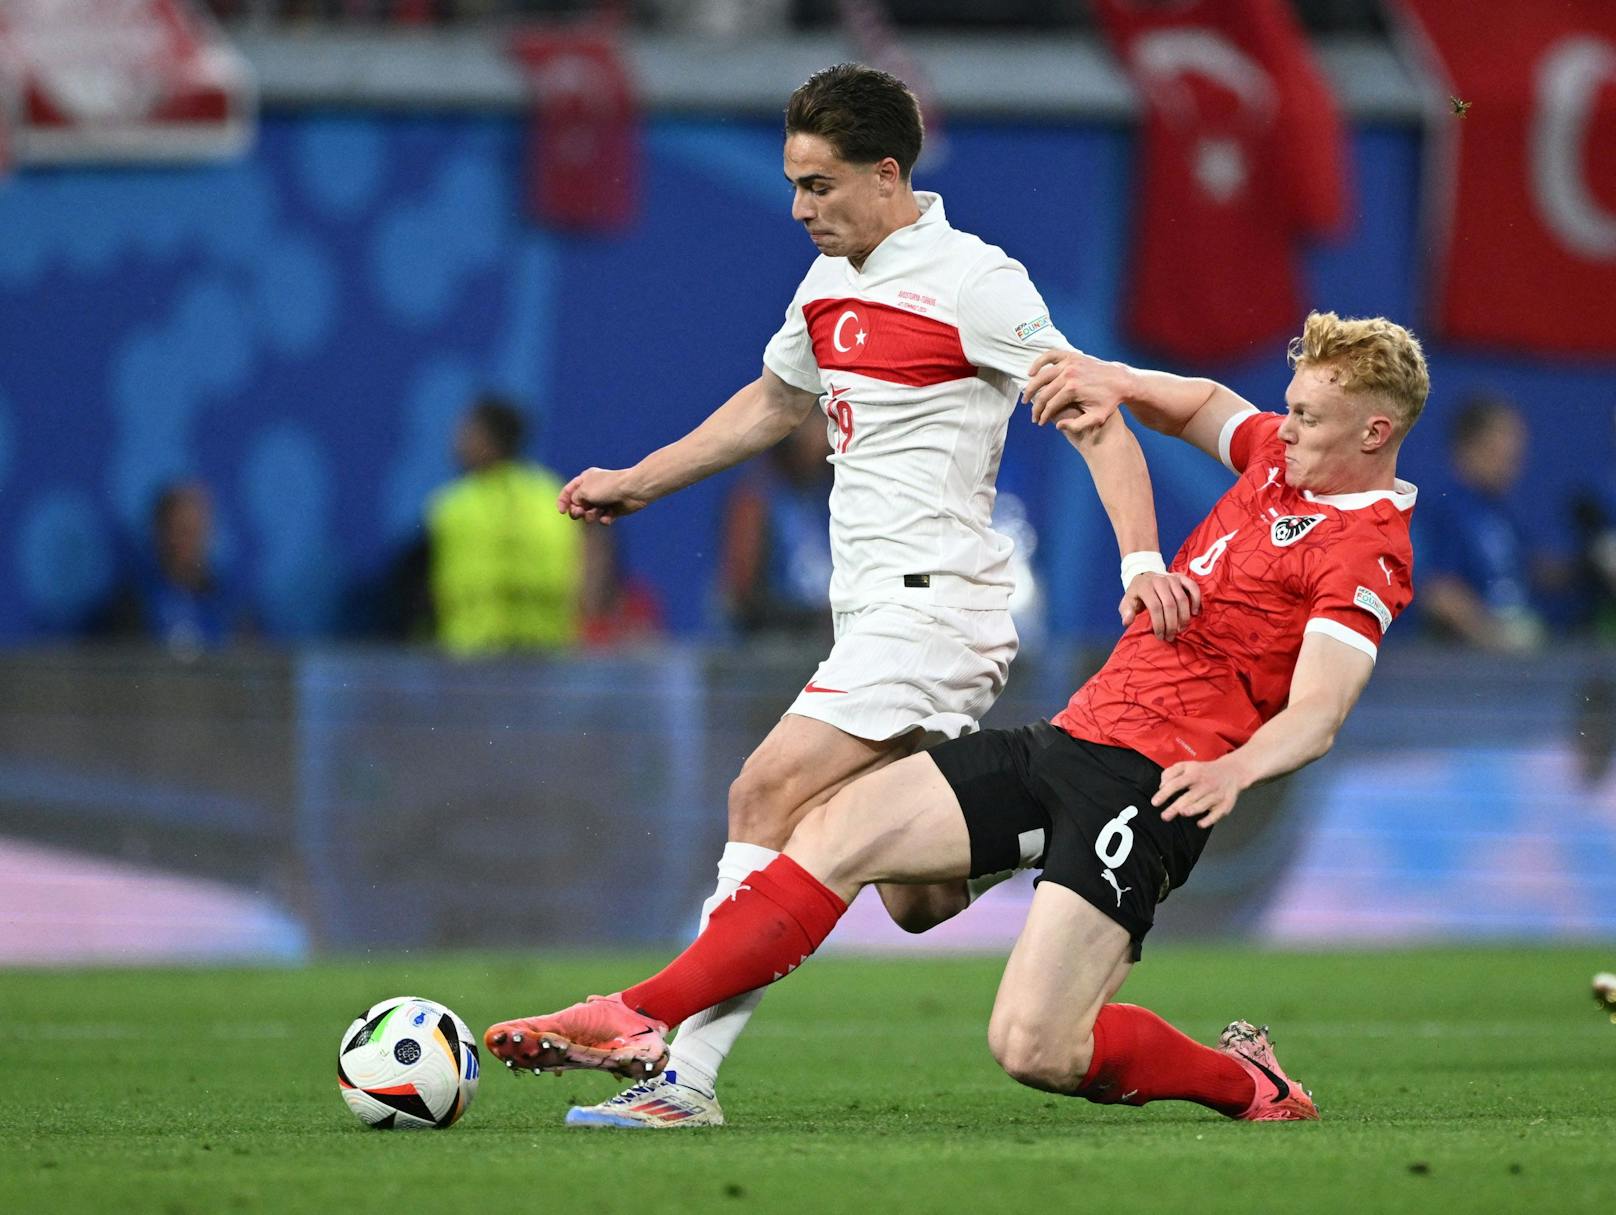 Österreichs Mittelfeldspieler Nici Seiwald mit dem starken Tackling gegen Kenan Yildiz. 